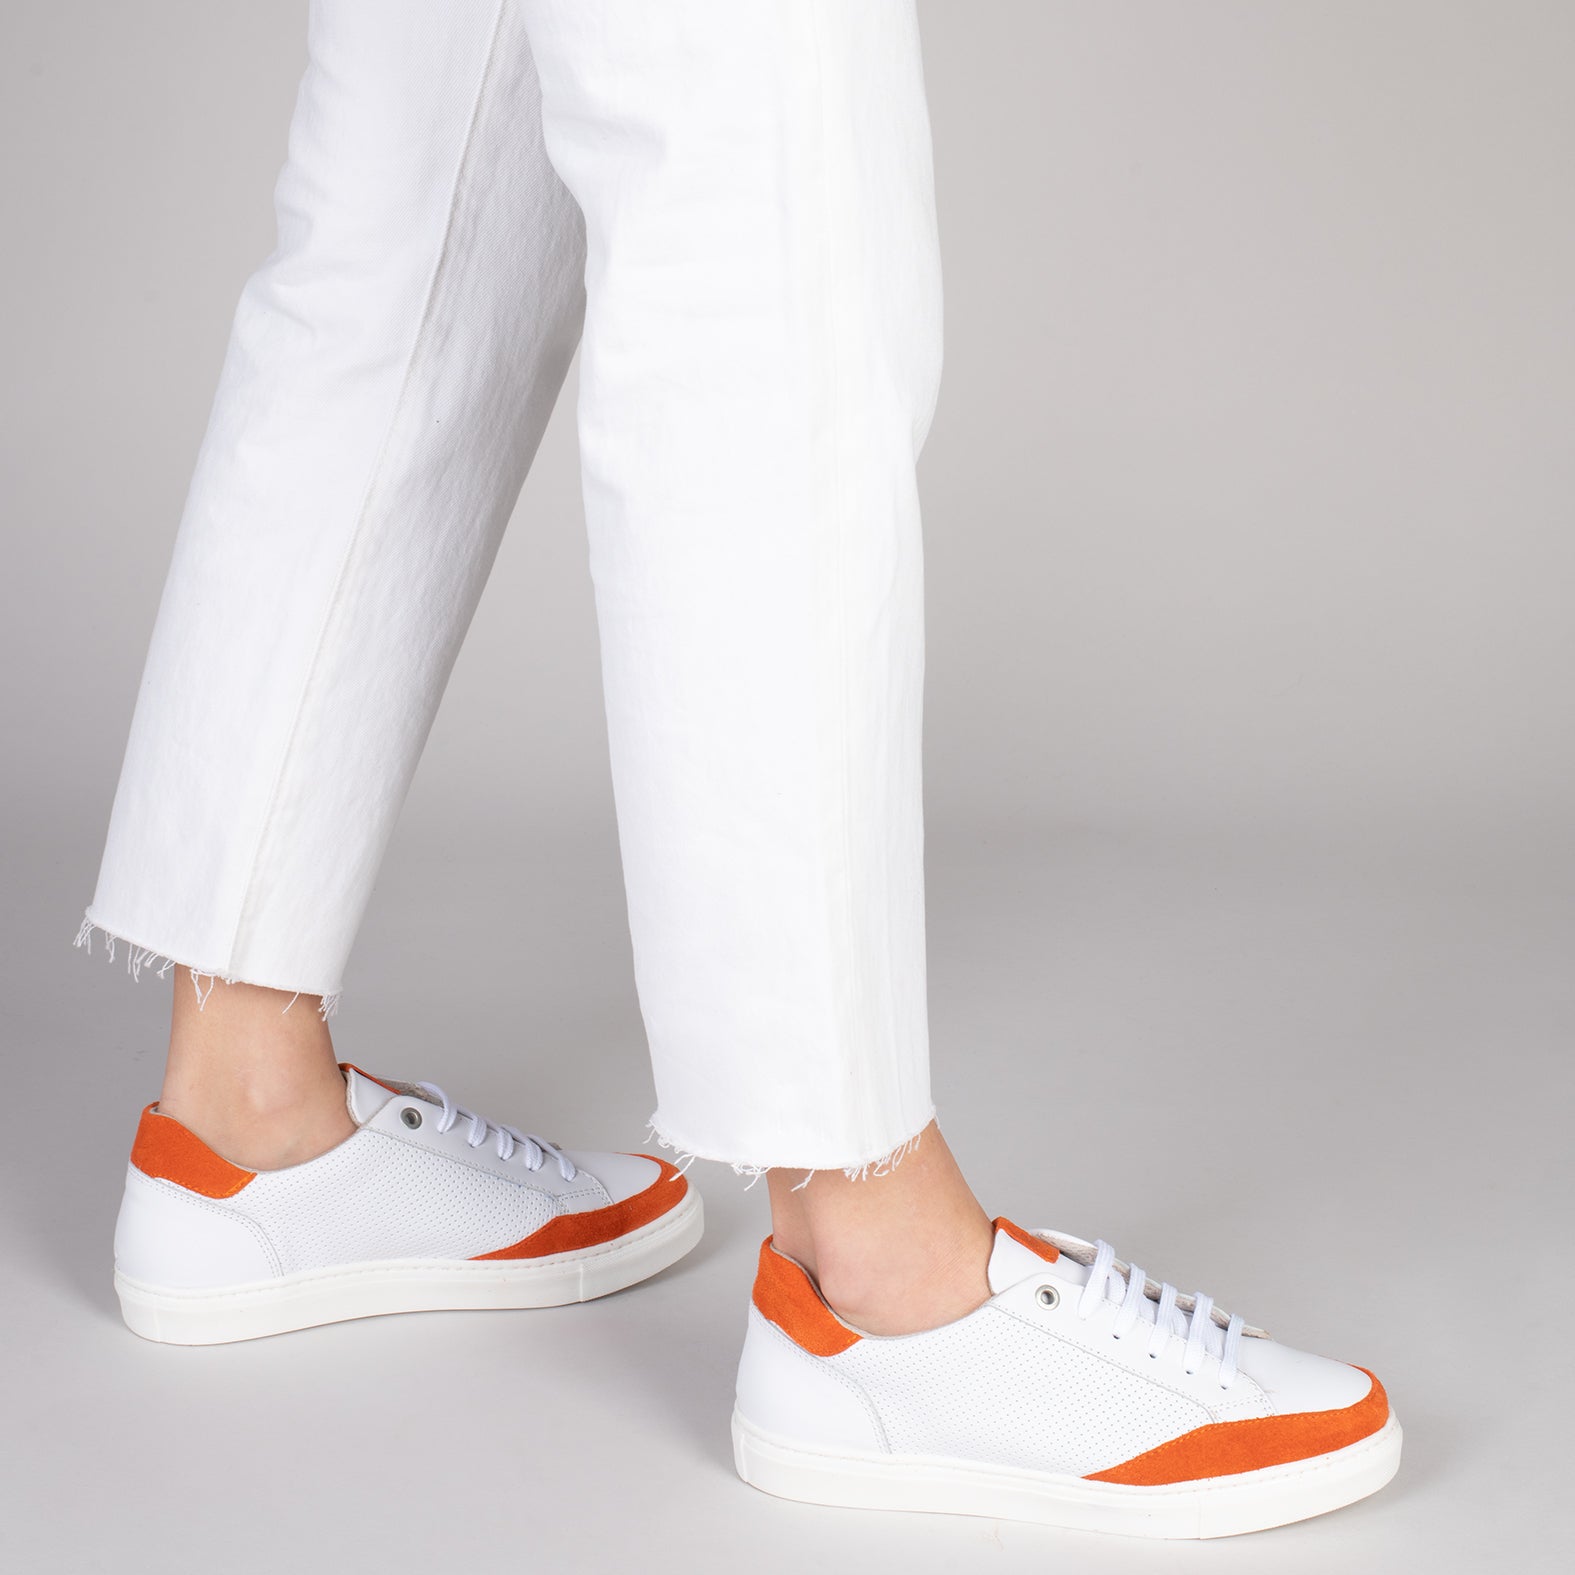 SNEAKER DOTS – ORANGE casual sneaker